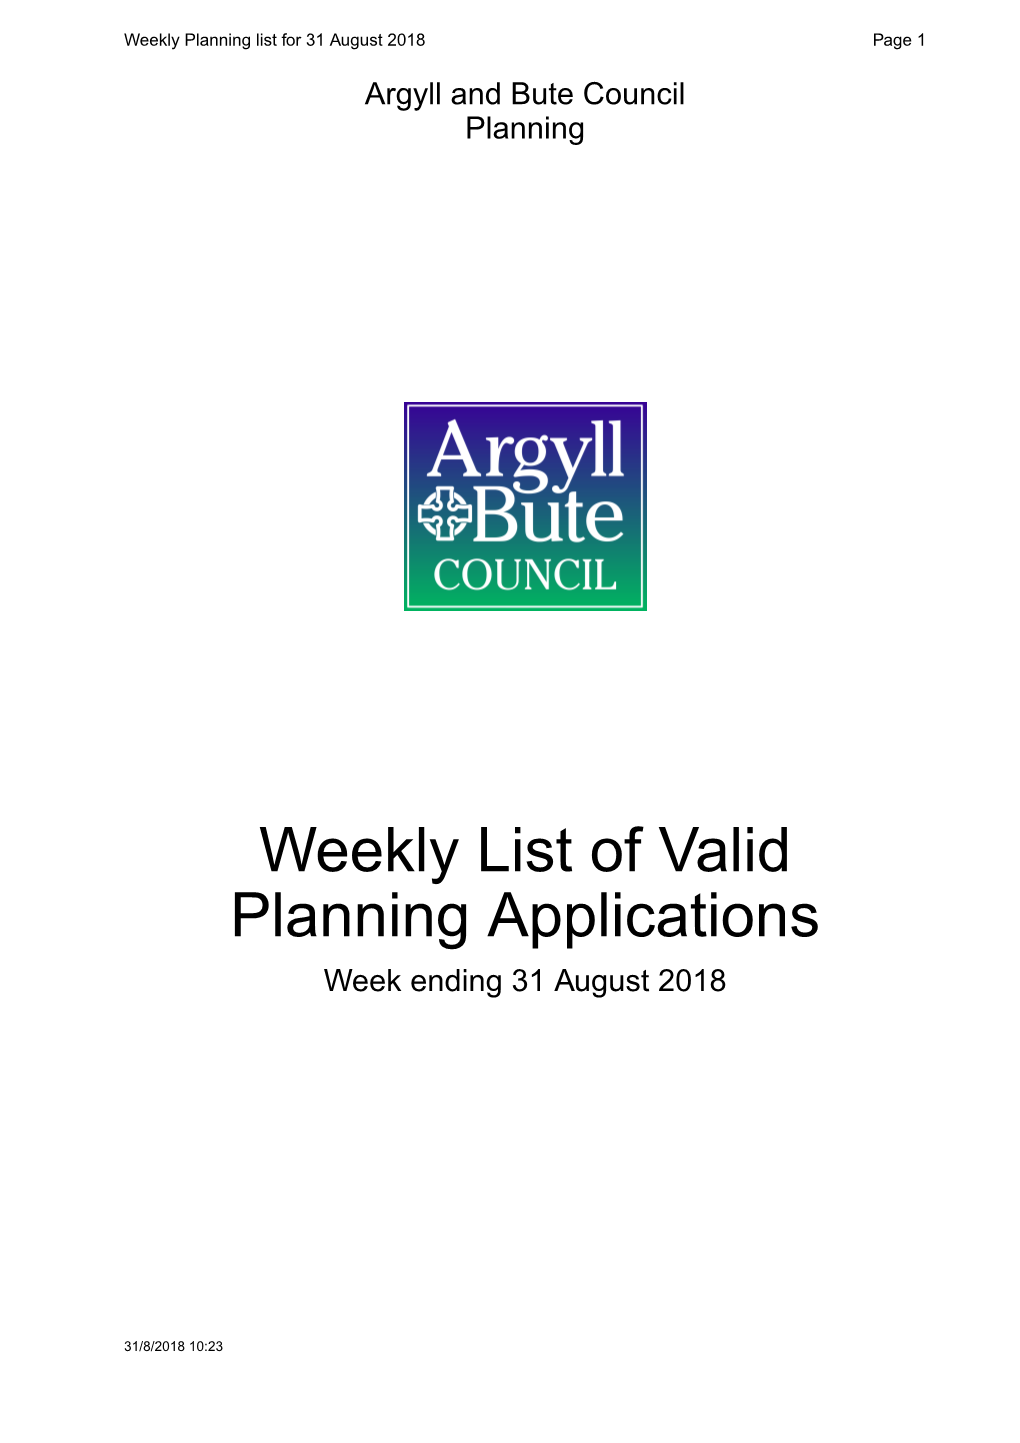 Weekly List of Valid Planning Applications Week Ending 31 August 2018